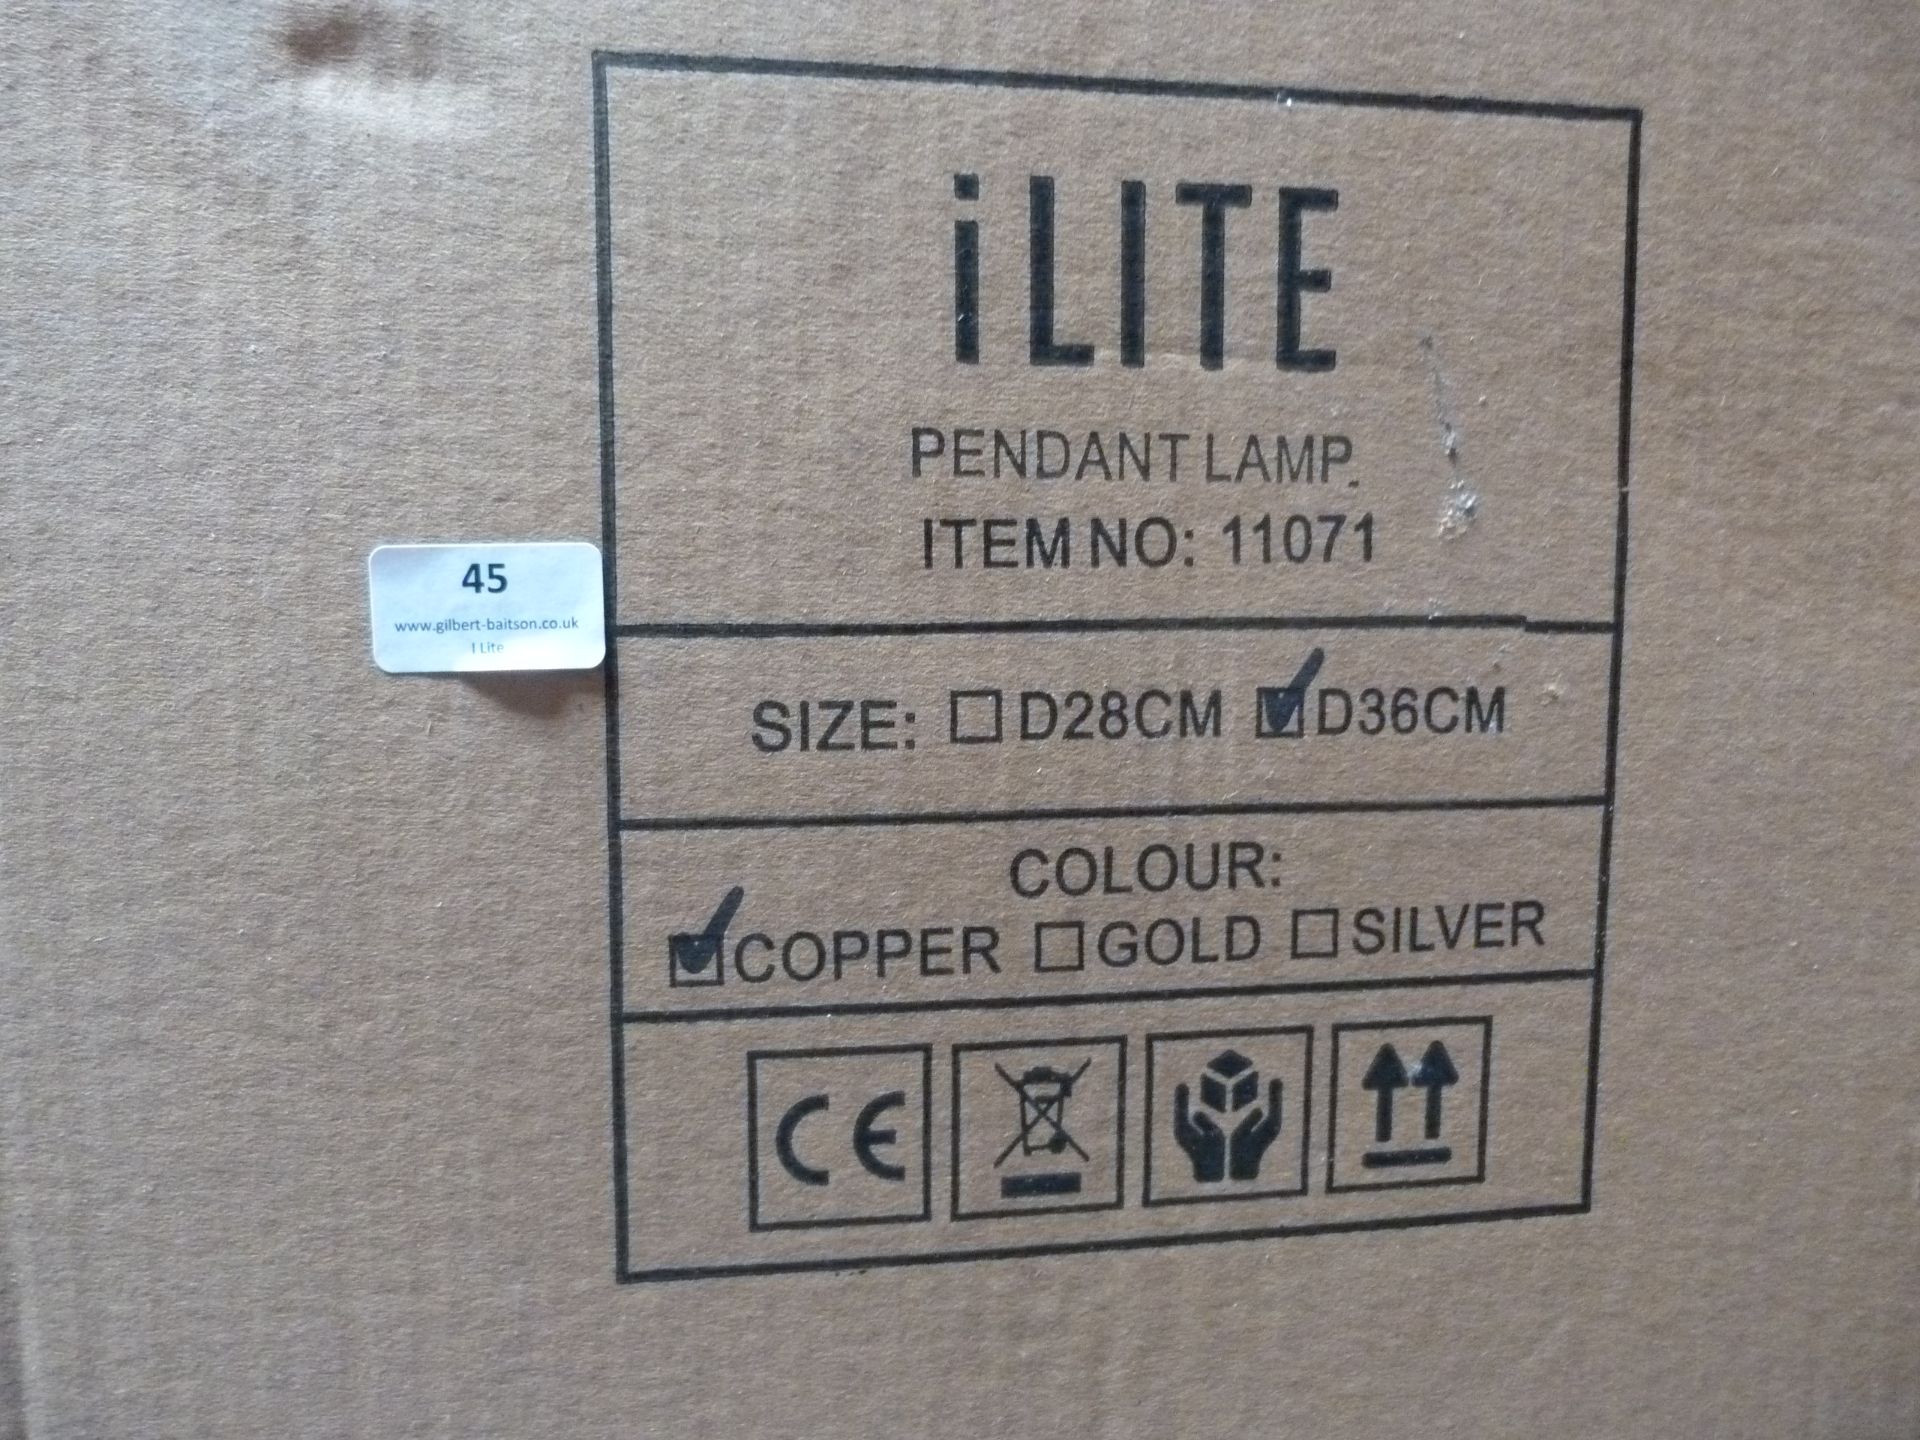 *36 ILite Pendant Lamps Item No.11071, Size: D36CM (copper) - Image 3 of 4